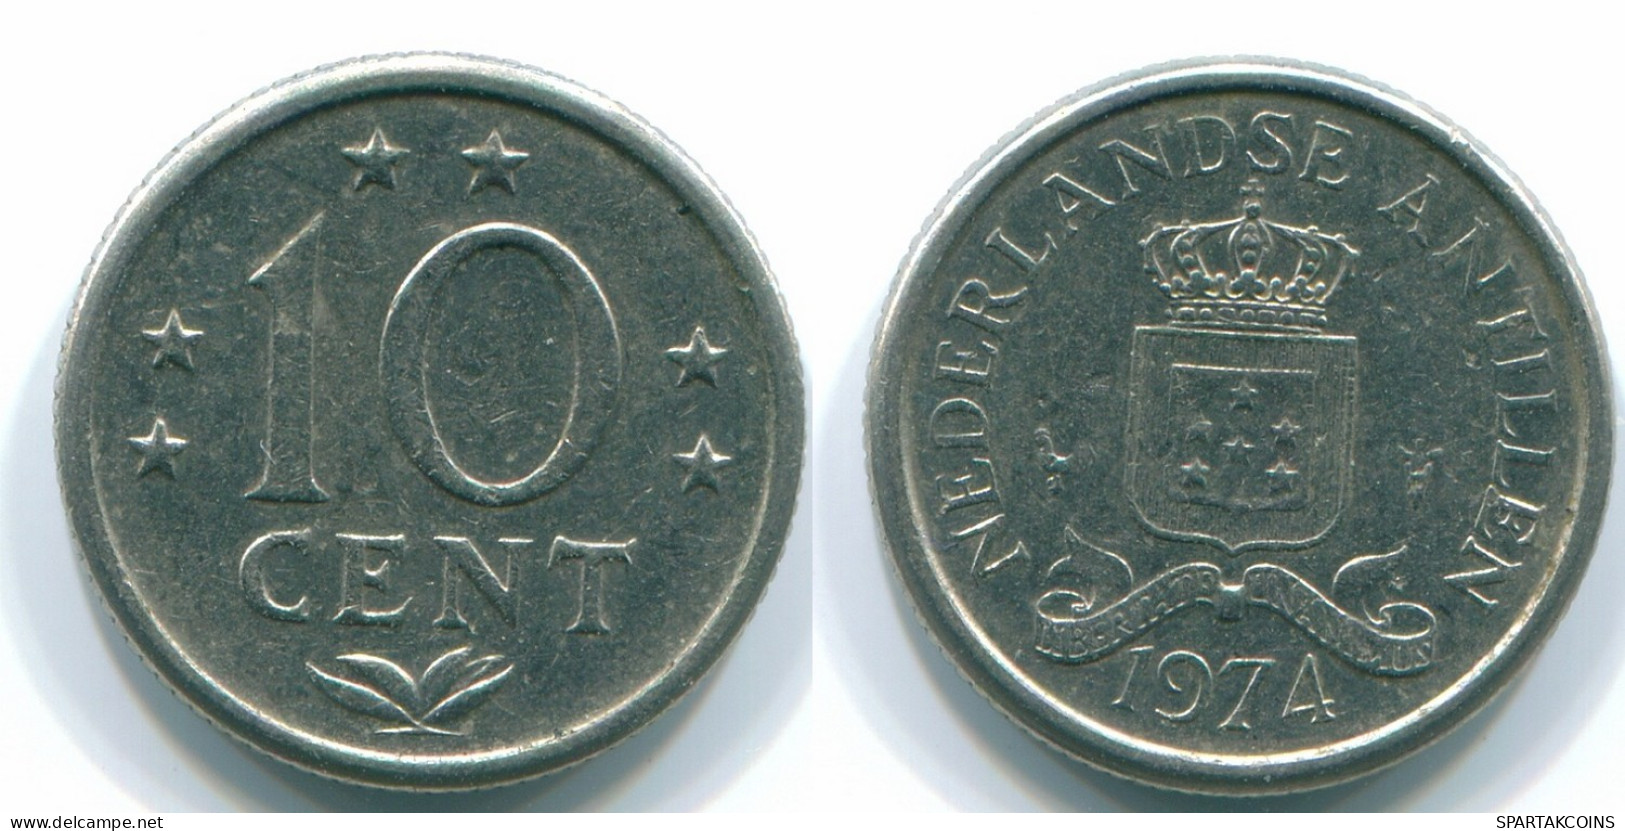 10 CENTS 1974 NETHERLANDS ANTILLES Nickel Colonial Coin #S13532.U.A - Niederländische Antillen